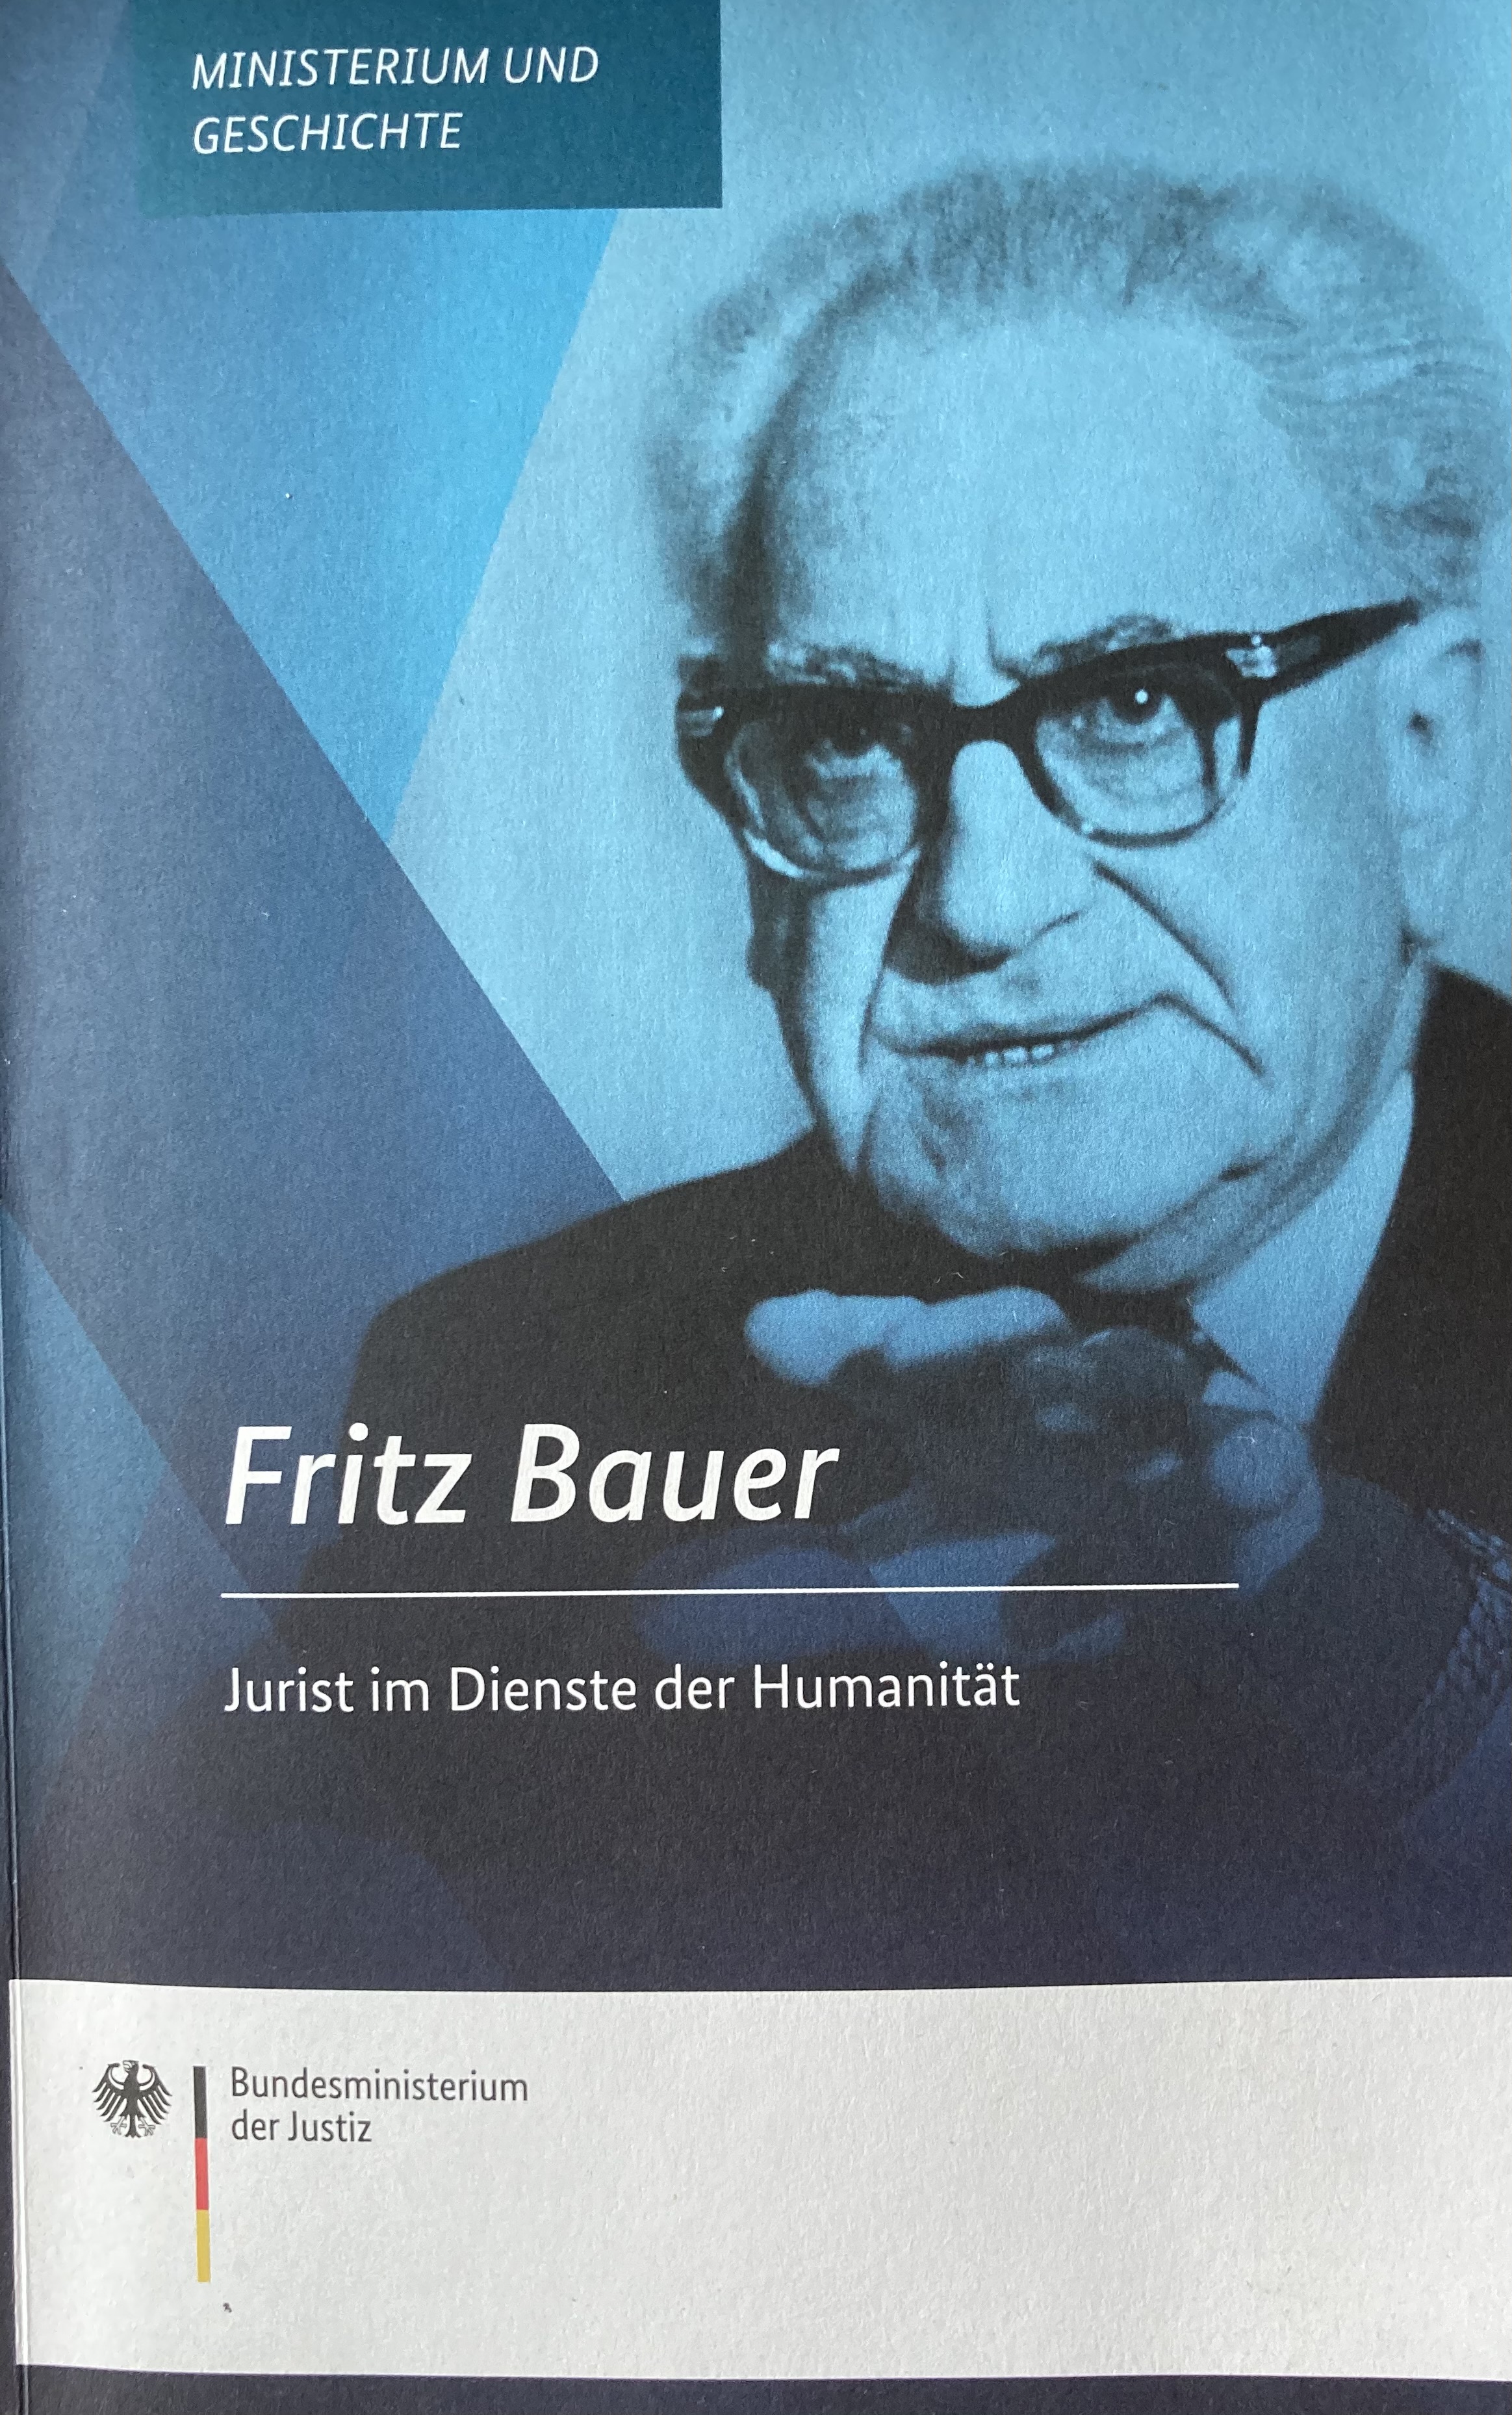 Ronen Steinke: Fritz Bauer (Paperback, deutsch language, BMJ)